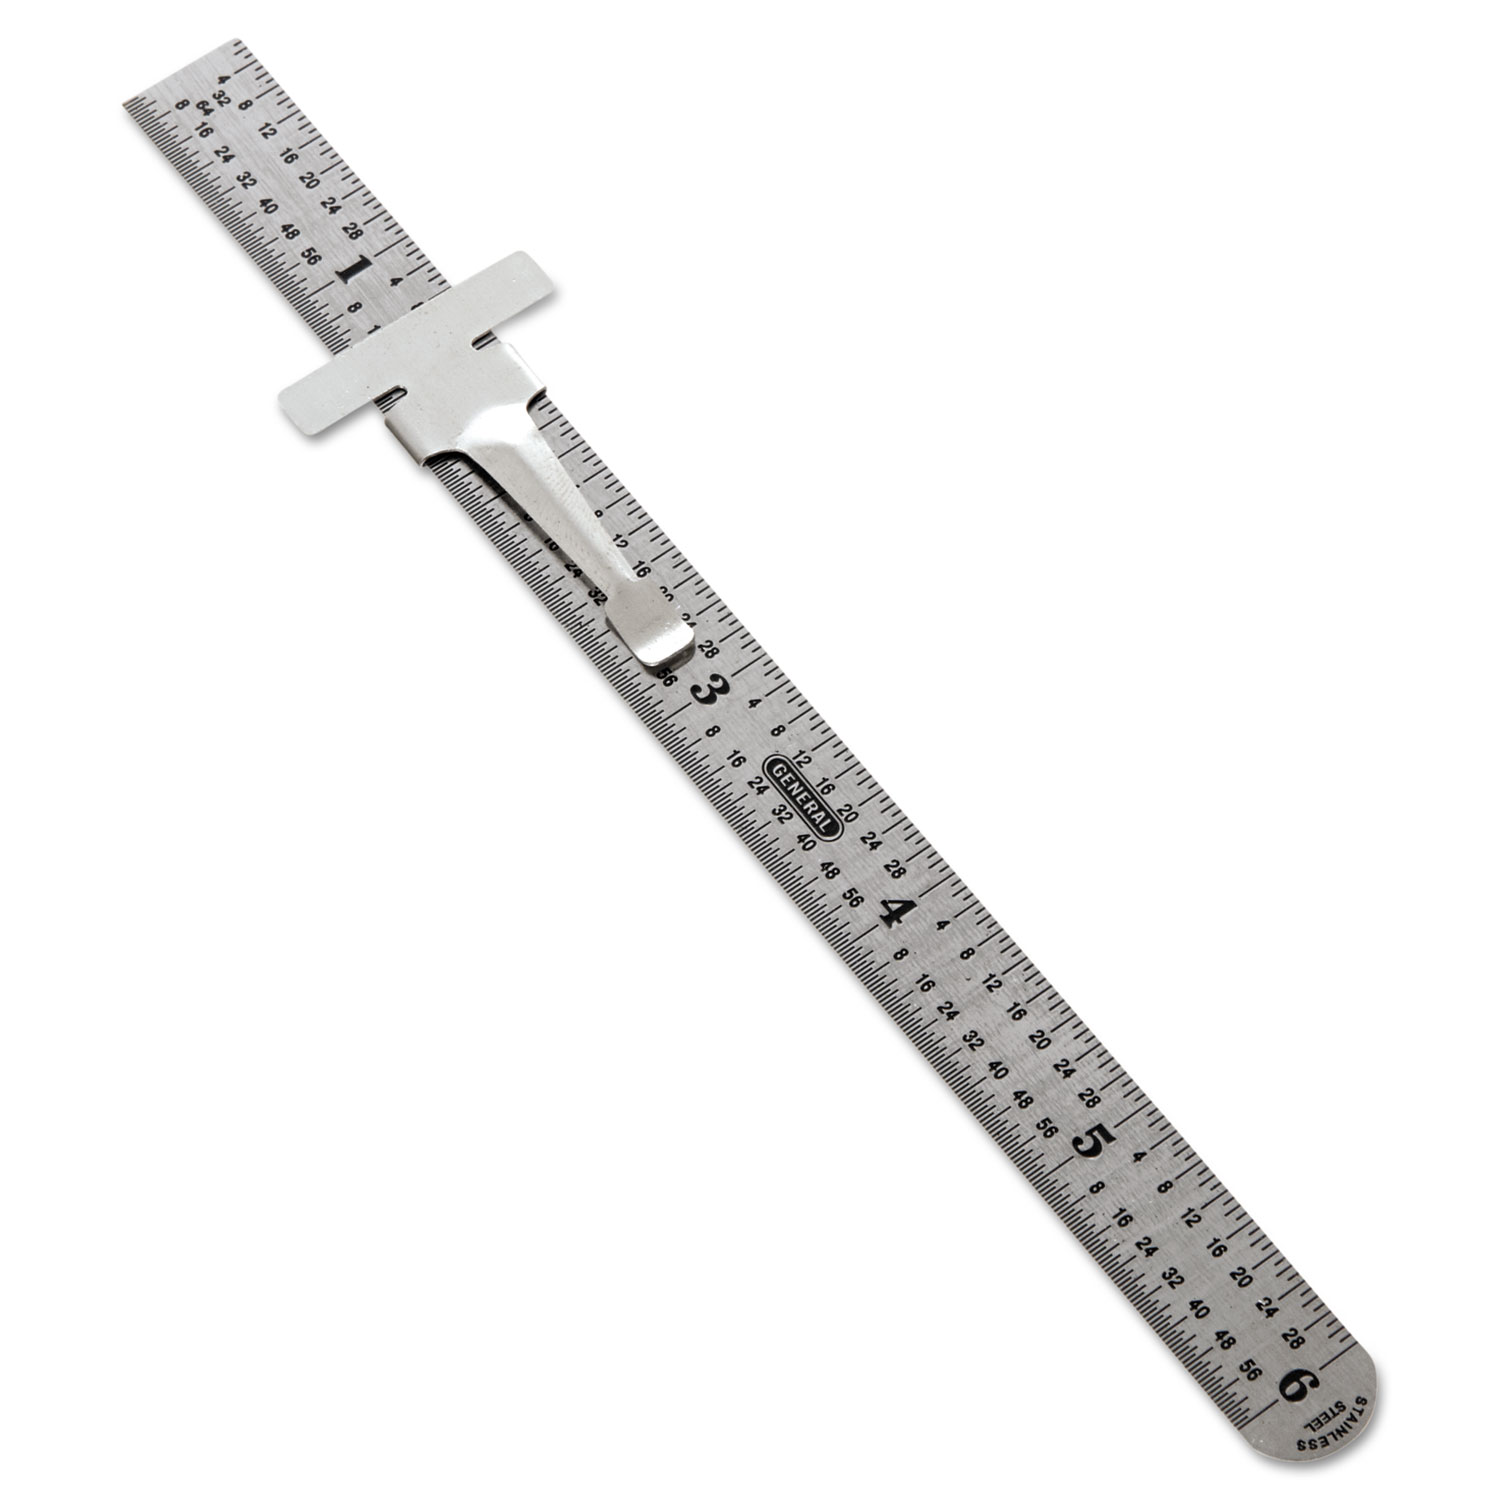  General 300/1 Precision Stainless Steel Ruler, Standard/Metric, 6 in (GTI3001) 